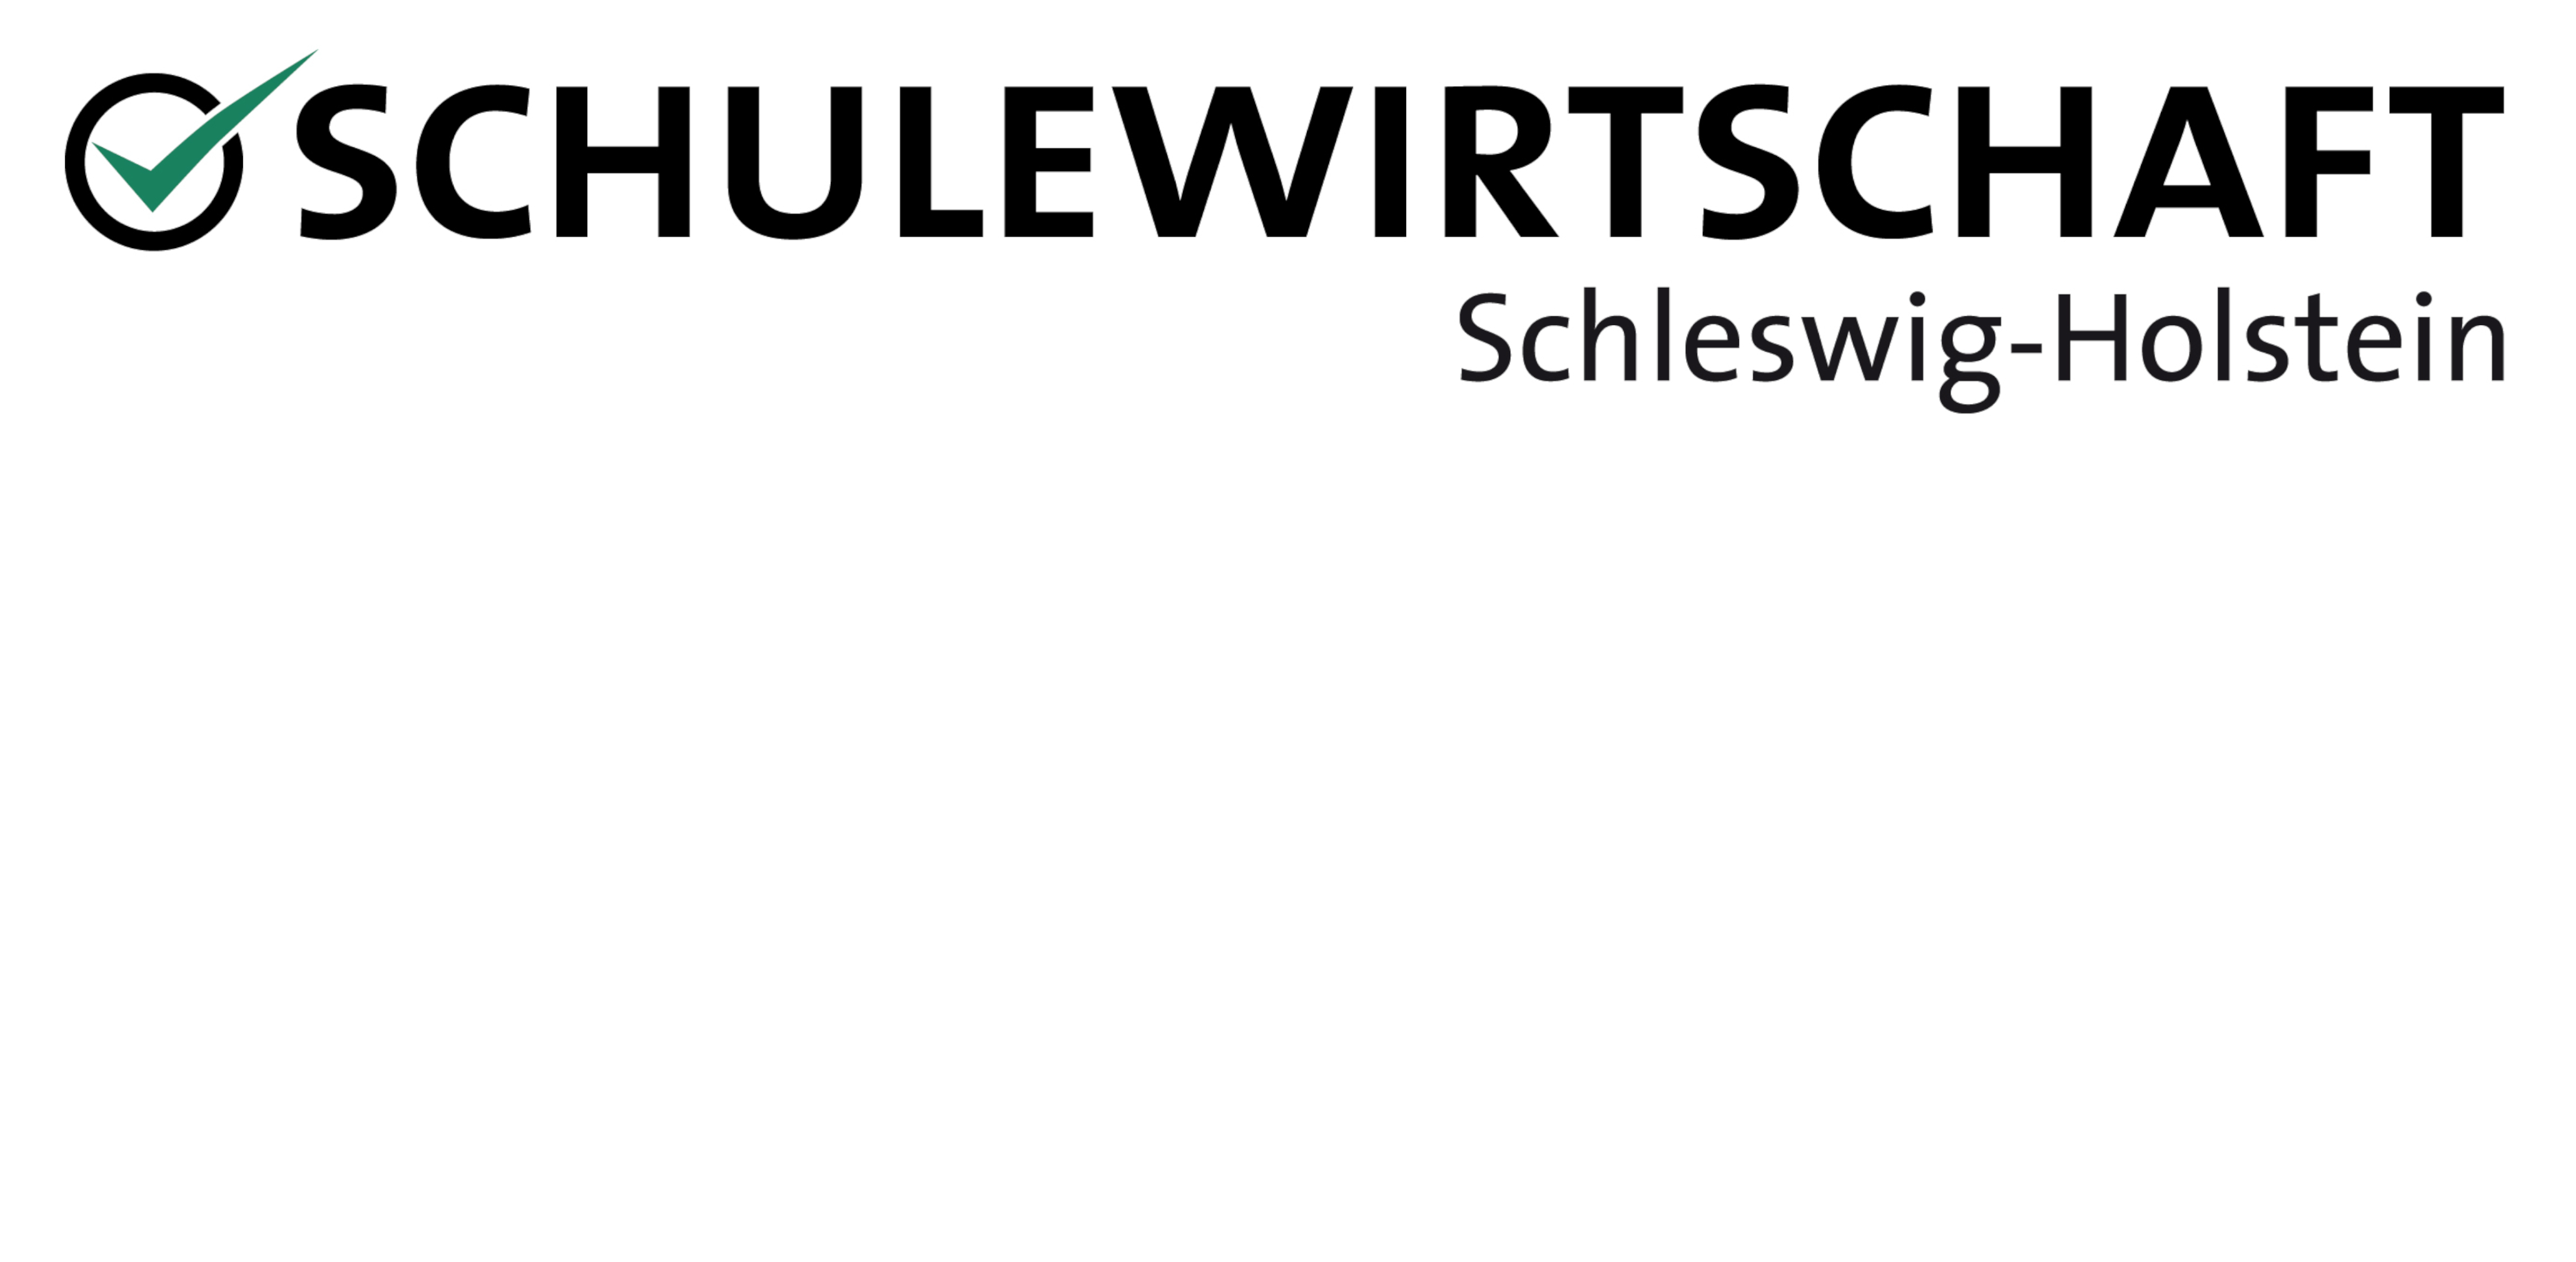 Schulewirtschaft Schleswig-Holstein